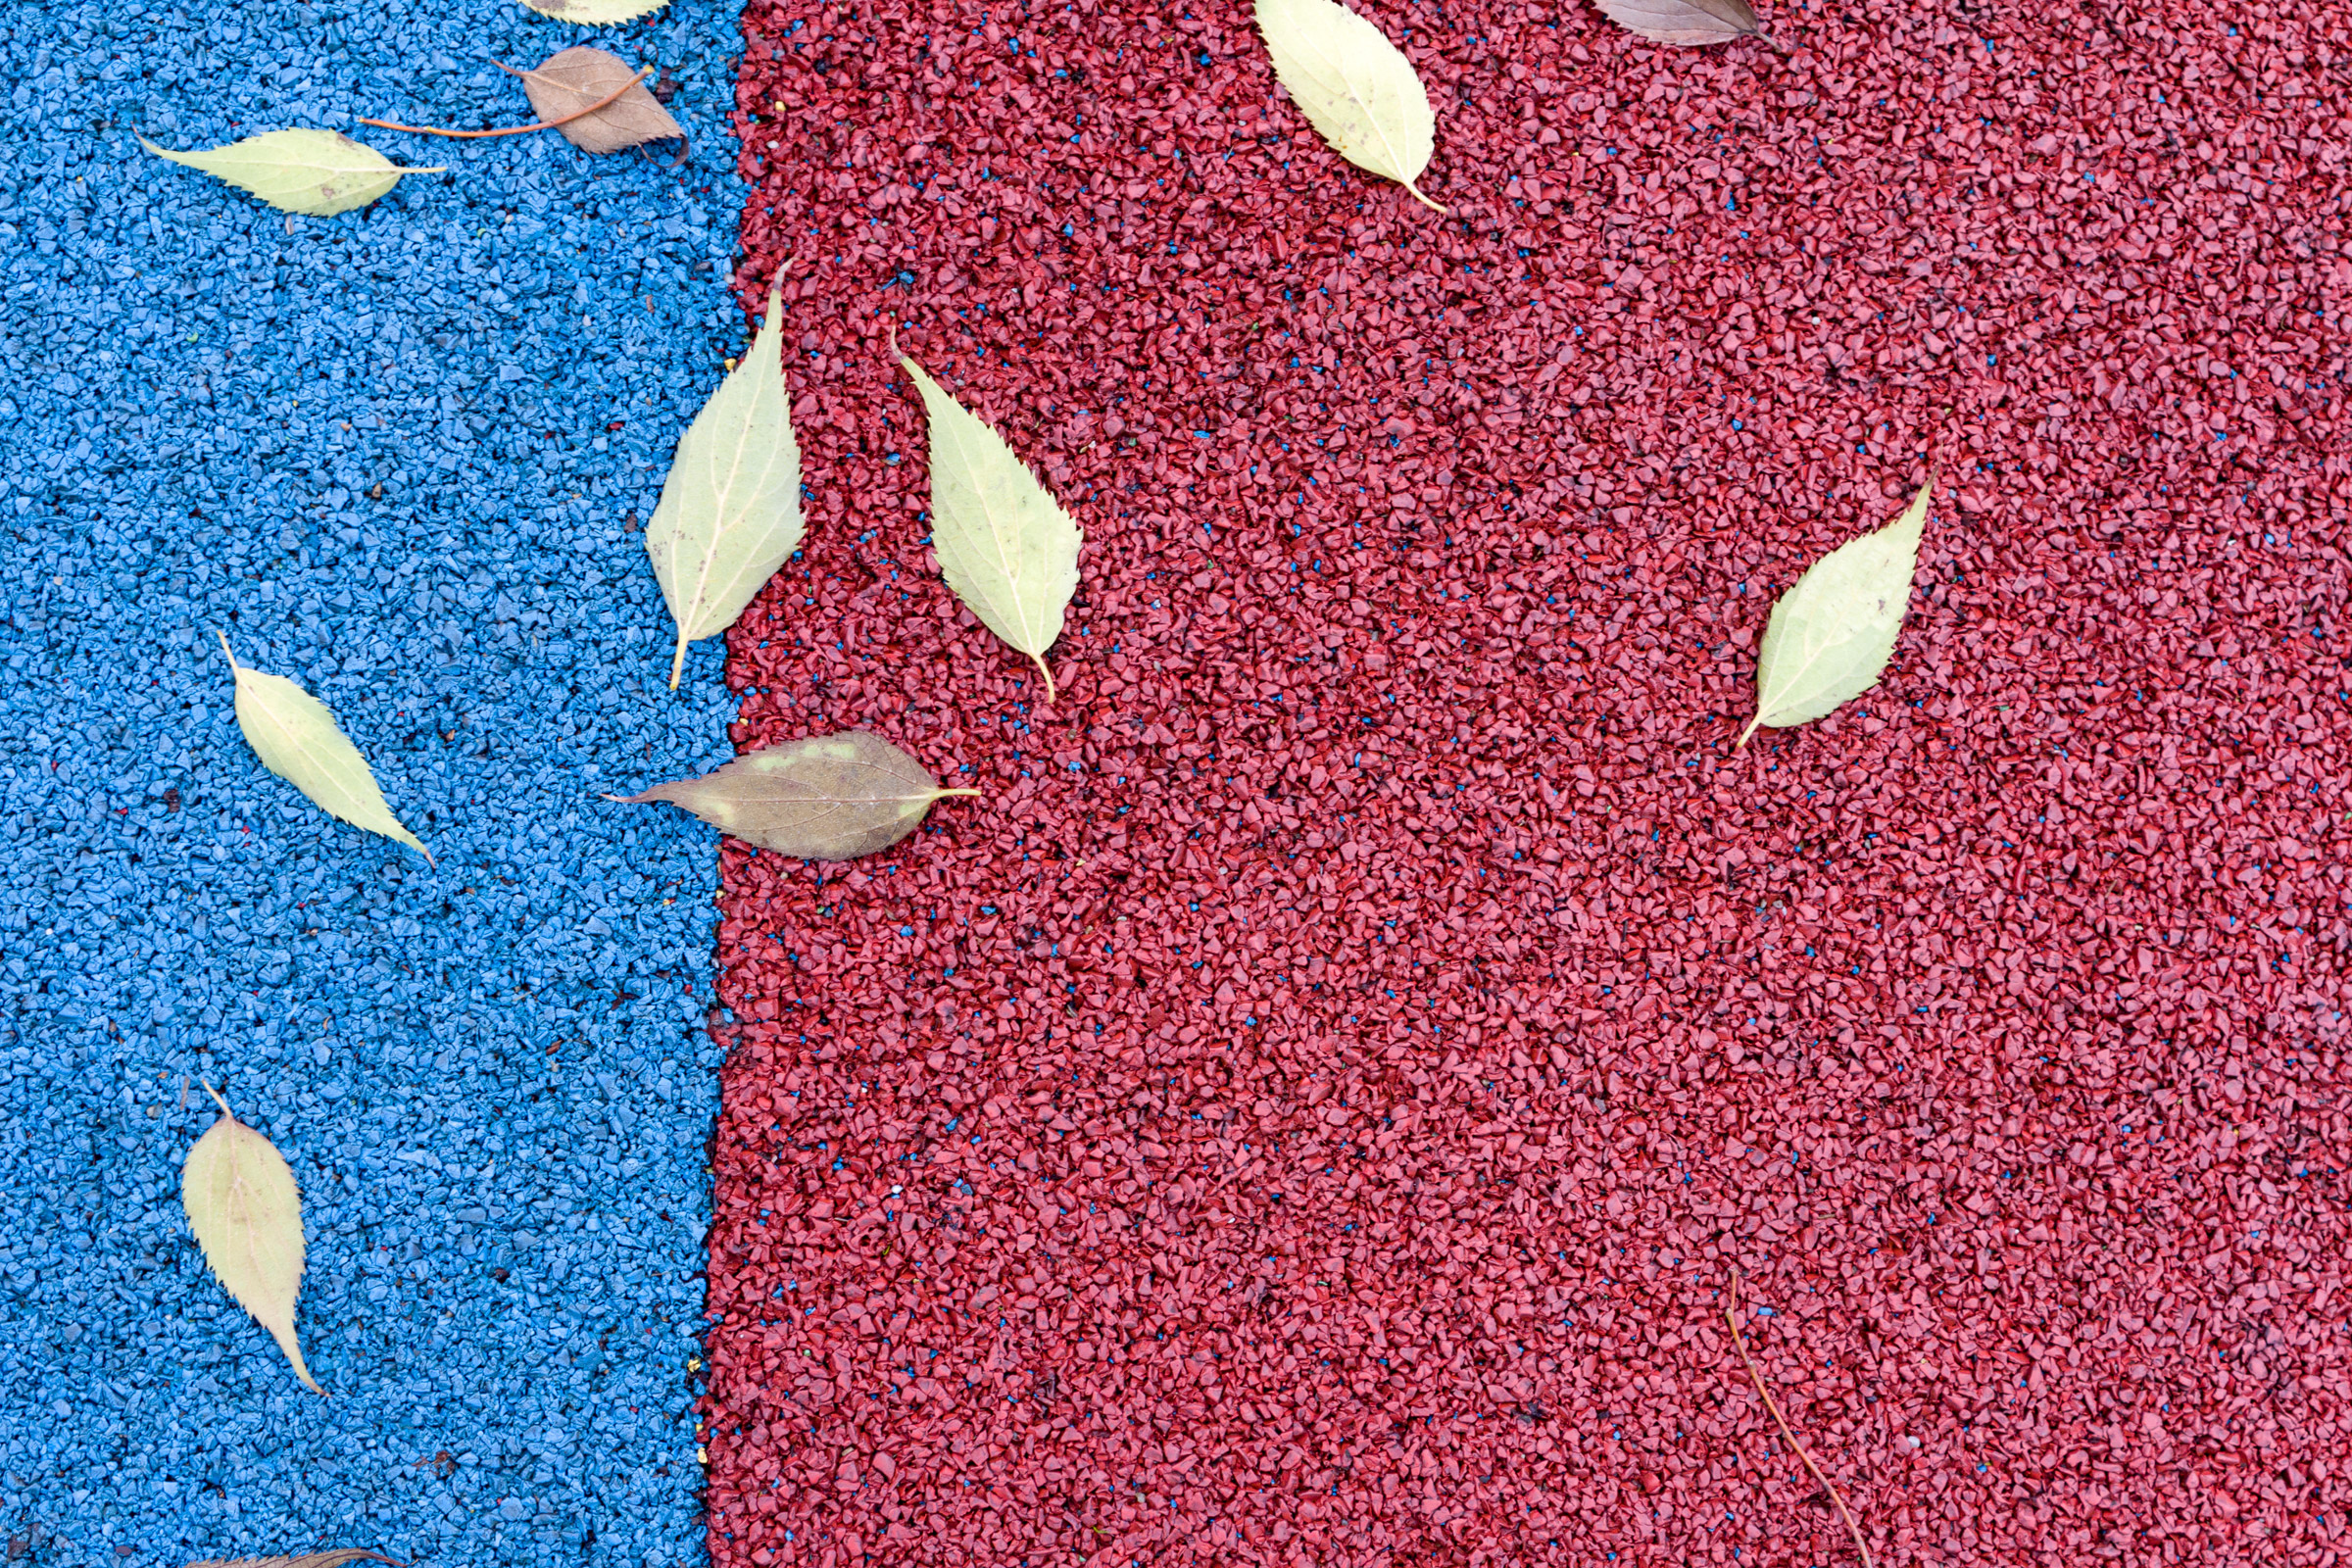 Leaves on playground floor